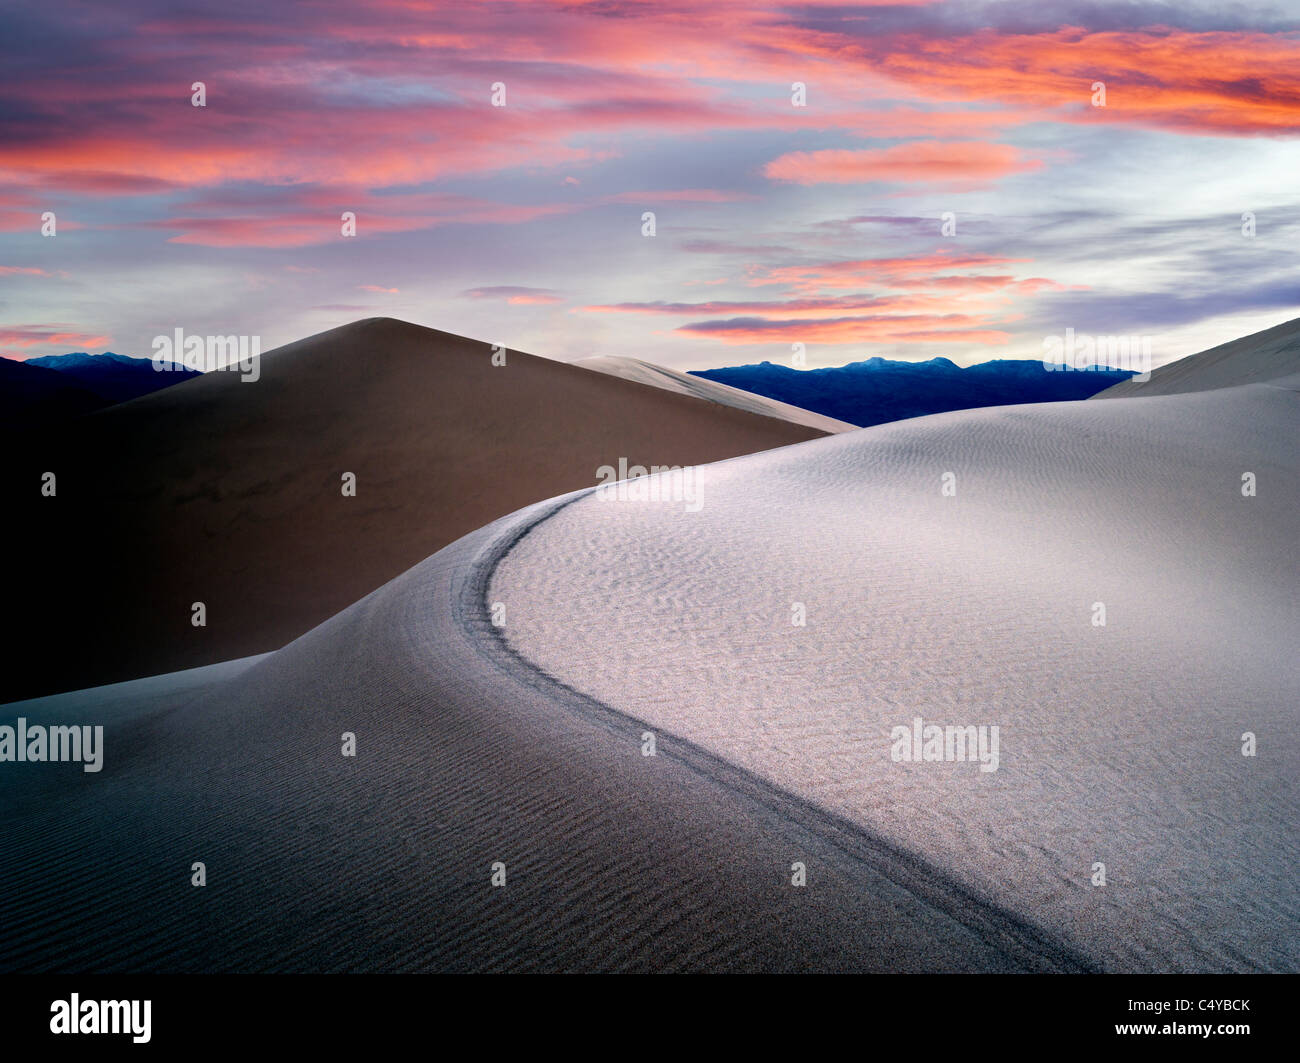 Sanddünen und Sonnenaufgang in Death Valley Nationalpark, Kalifornien. Himmel wurde hinzugefügt Stockfoto